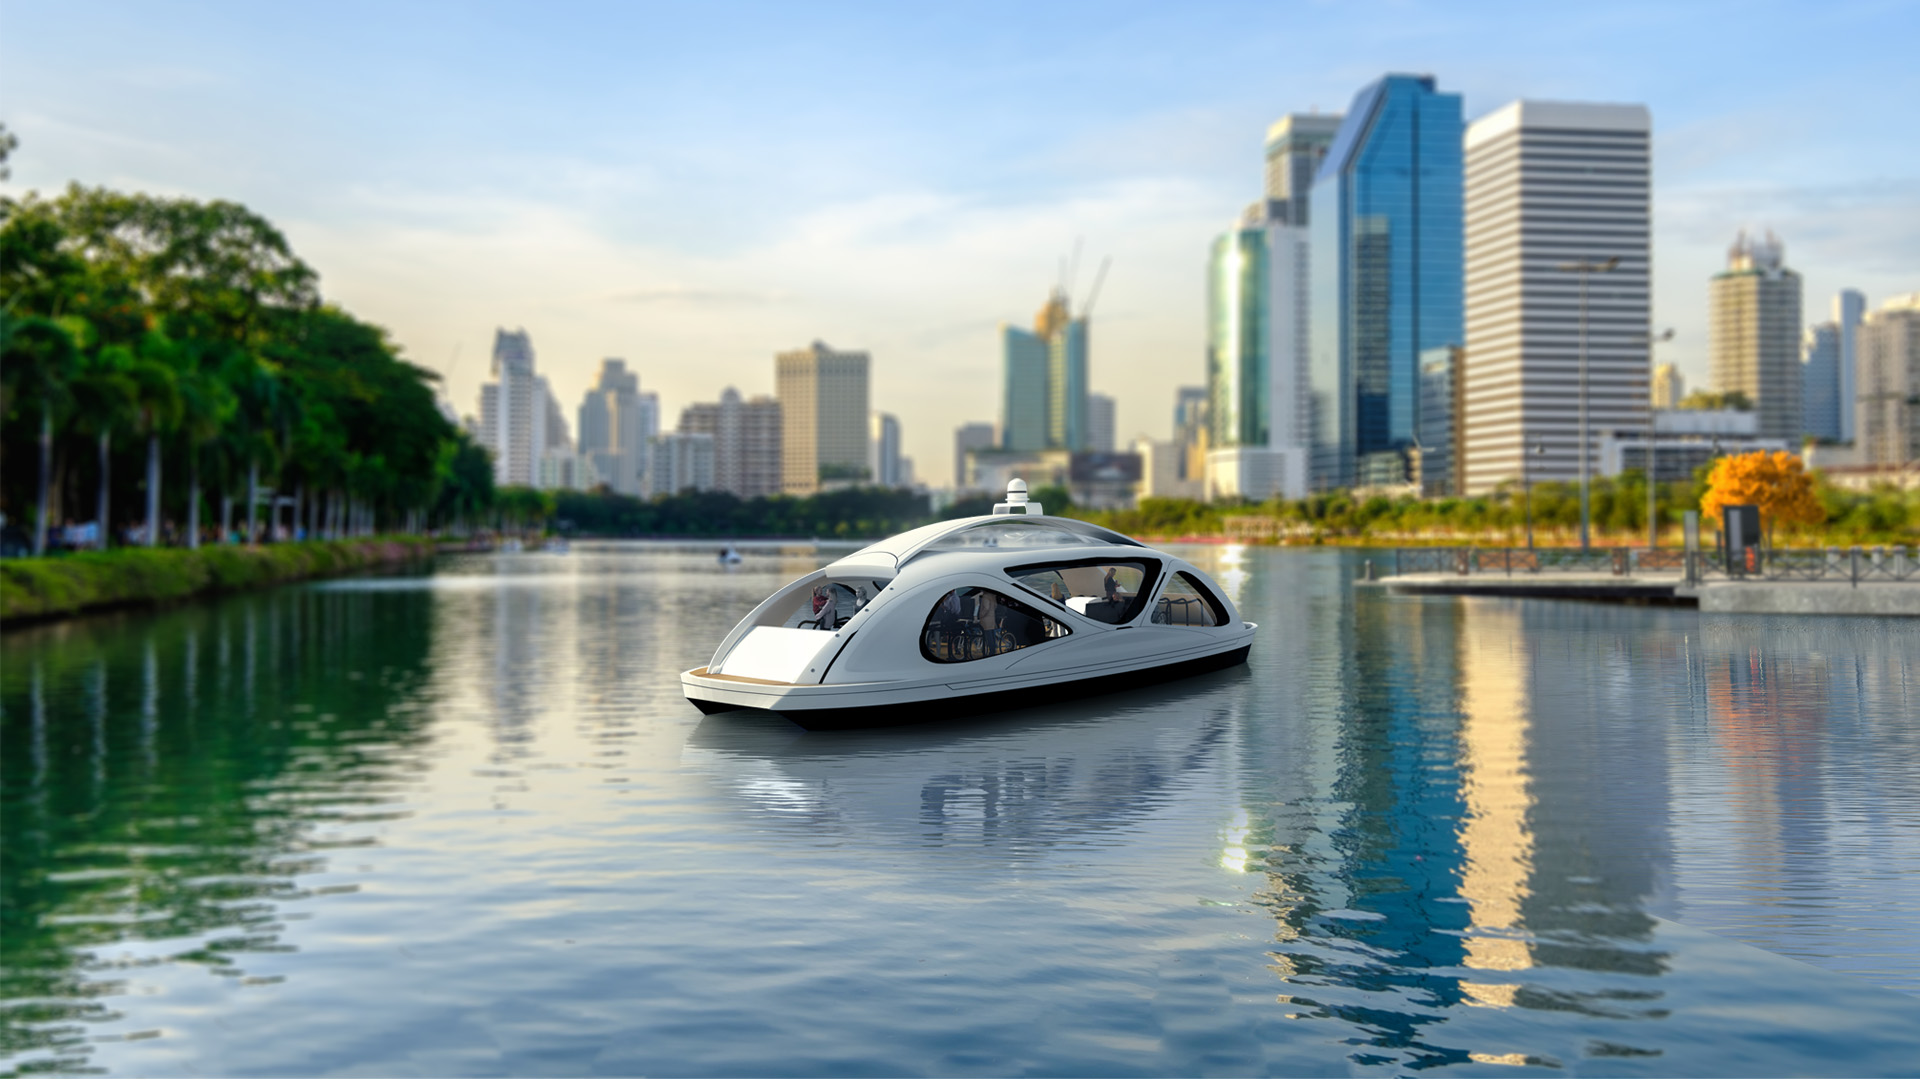 Estos taxis acuáticos revolucionarán el transporte público: Zeabuz, movilidad urbana autónoma de emisión cero